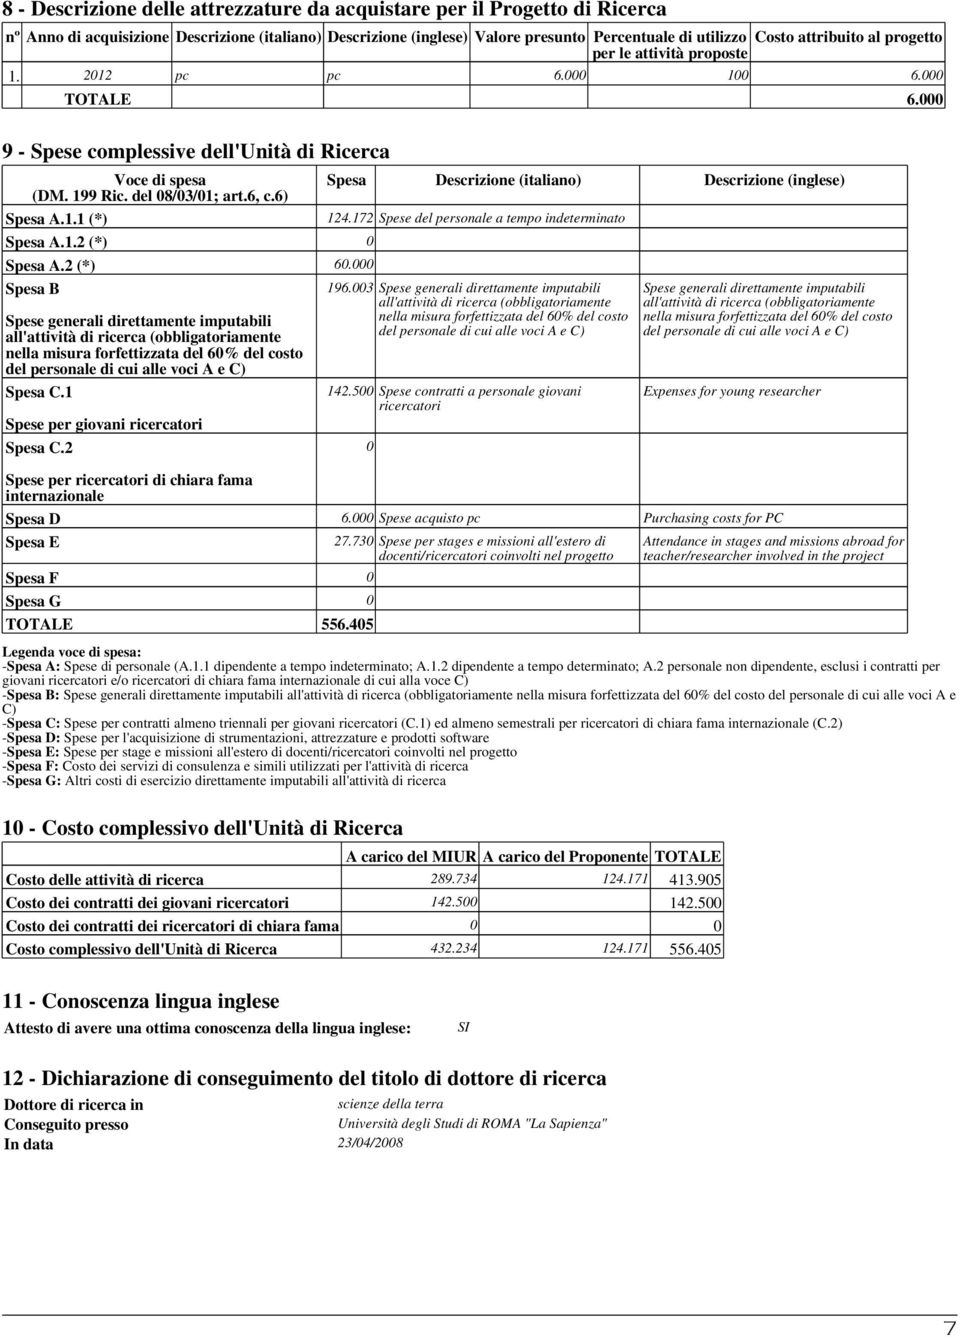 000 9 - Spese complessive dell'unità di Ricerca Voce di spesa Spesa Descrizione (italiano) Descrizione (inglese) (DM. 199 Ric. del 08/03/01; art.6, c.6) Spesa A.1.1 (*) 124.